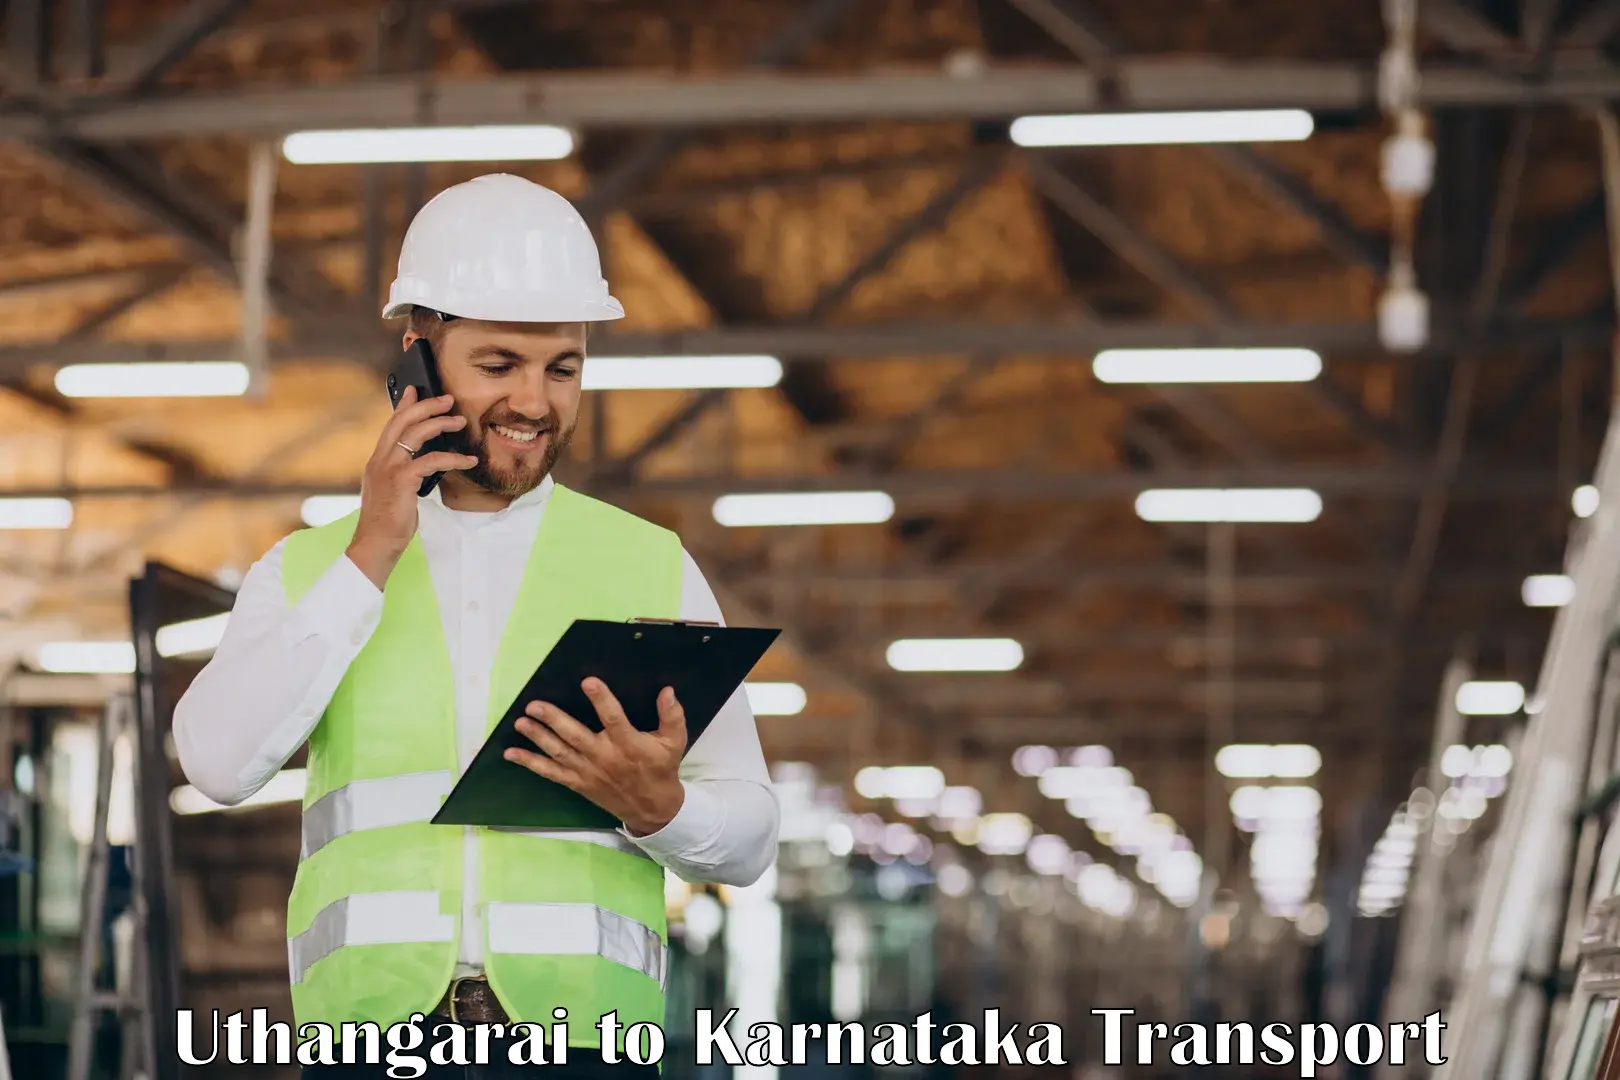 Parcel transport services Uthangarai to Karnataka